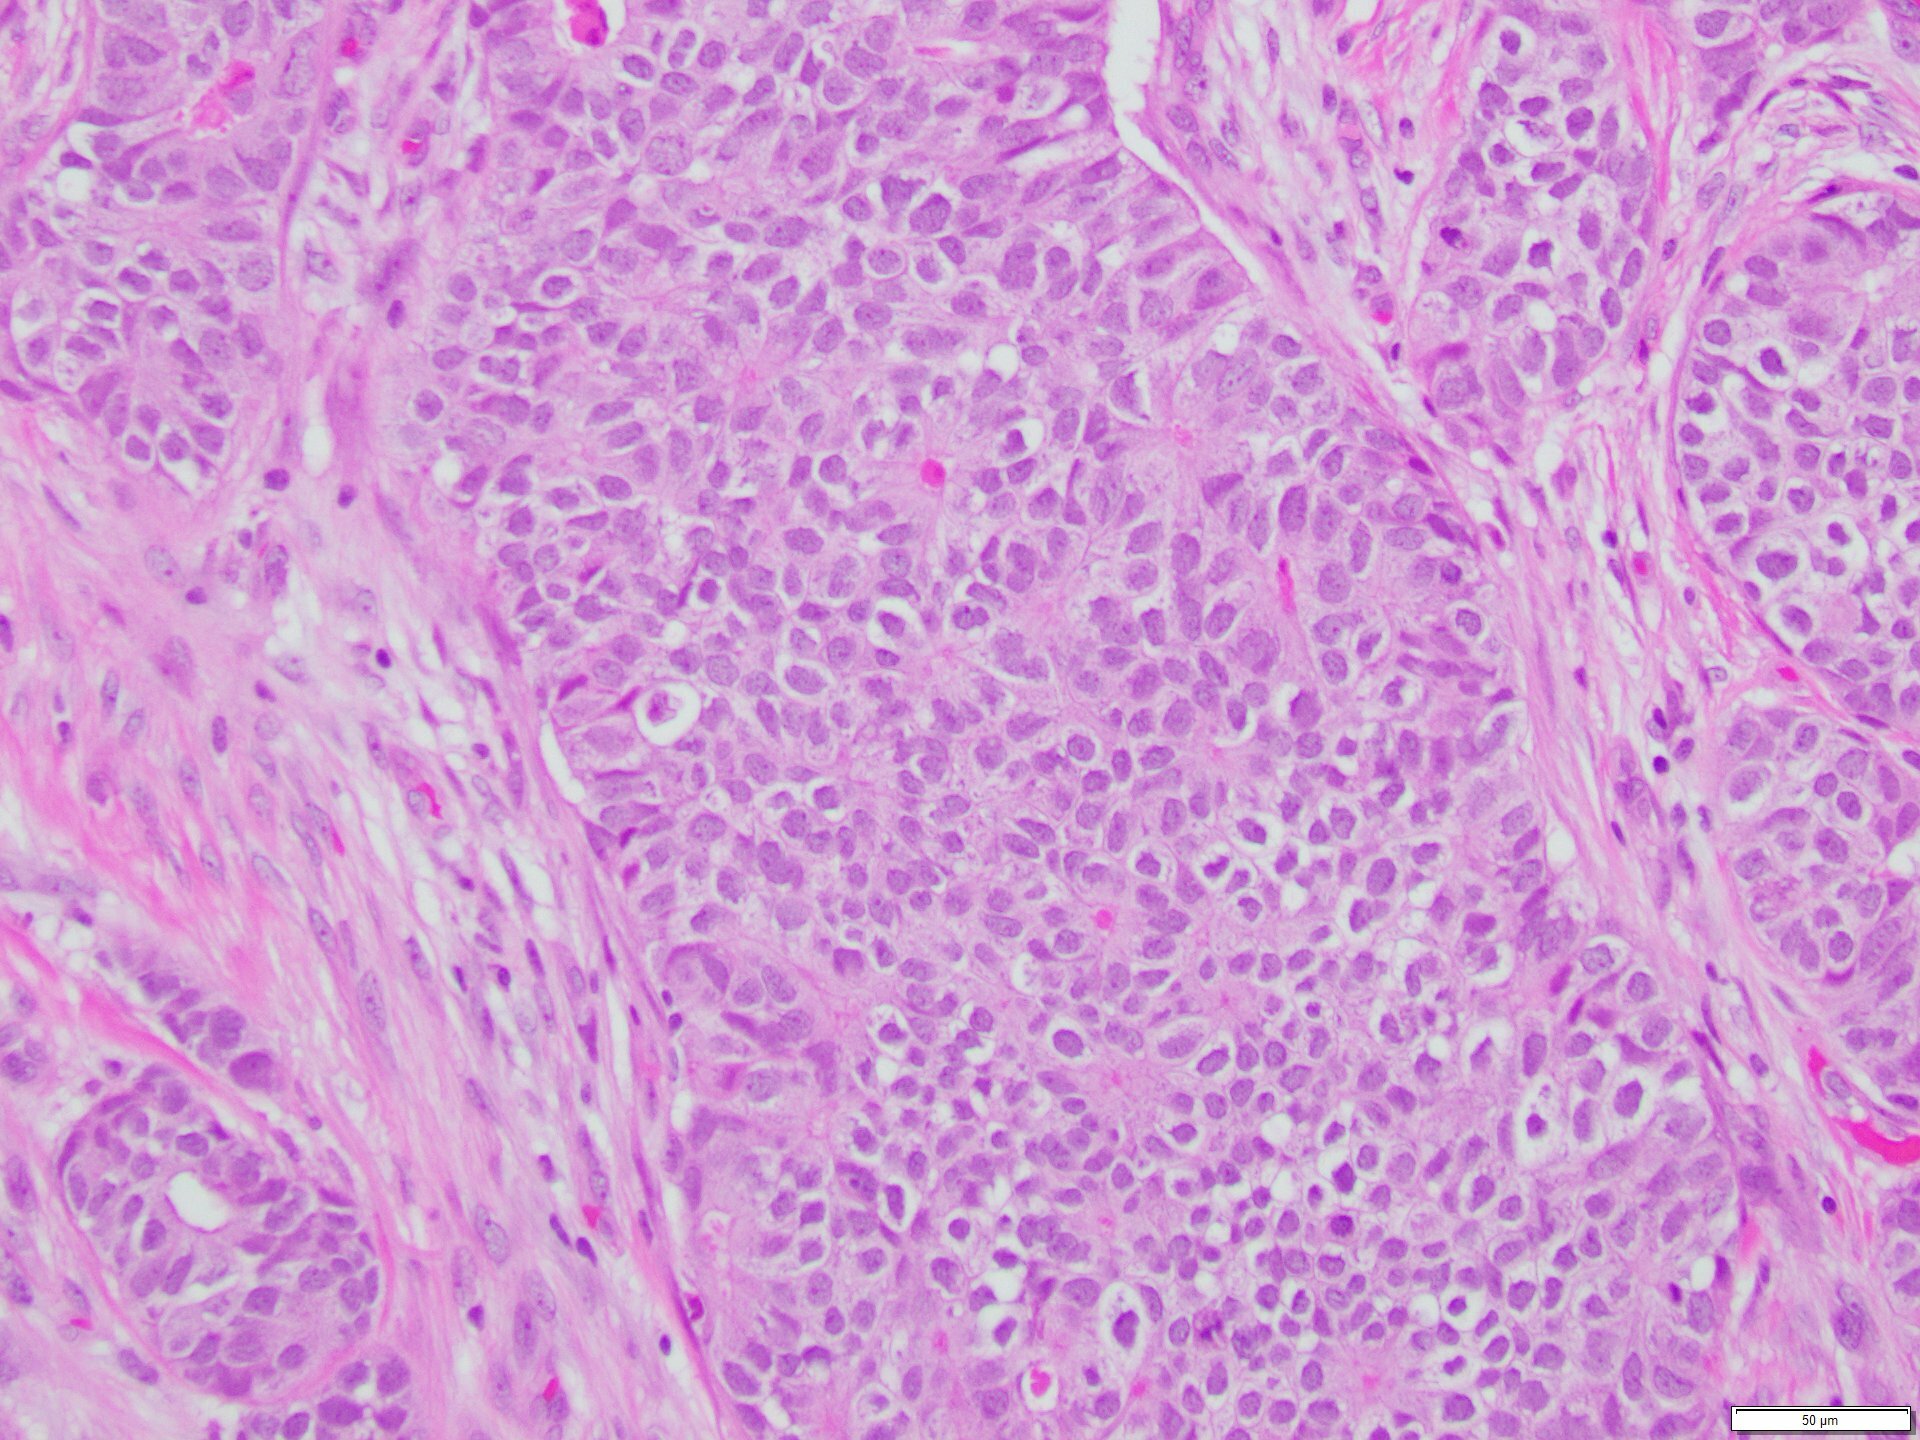 Figure 7. Patient’s prior breast carcinoma. 